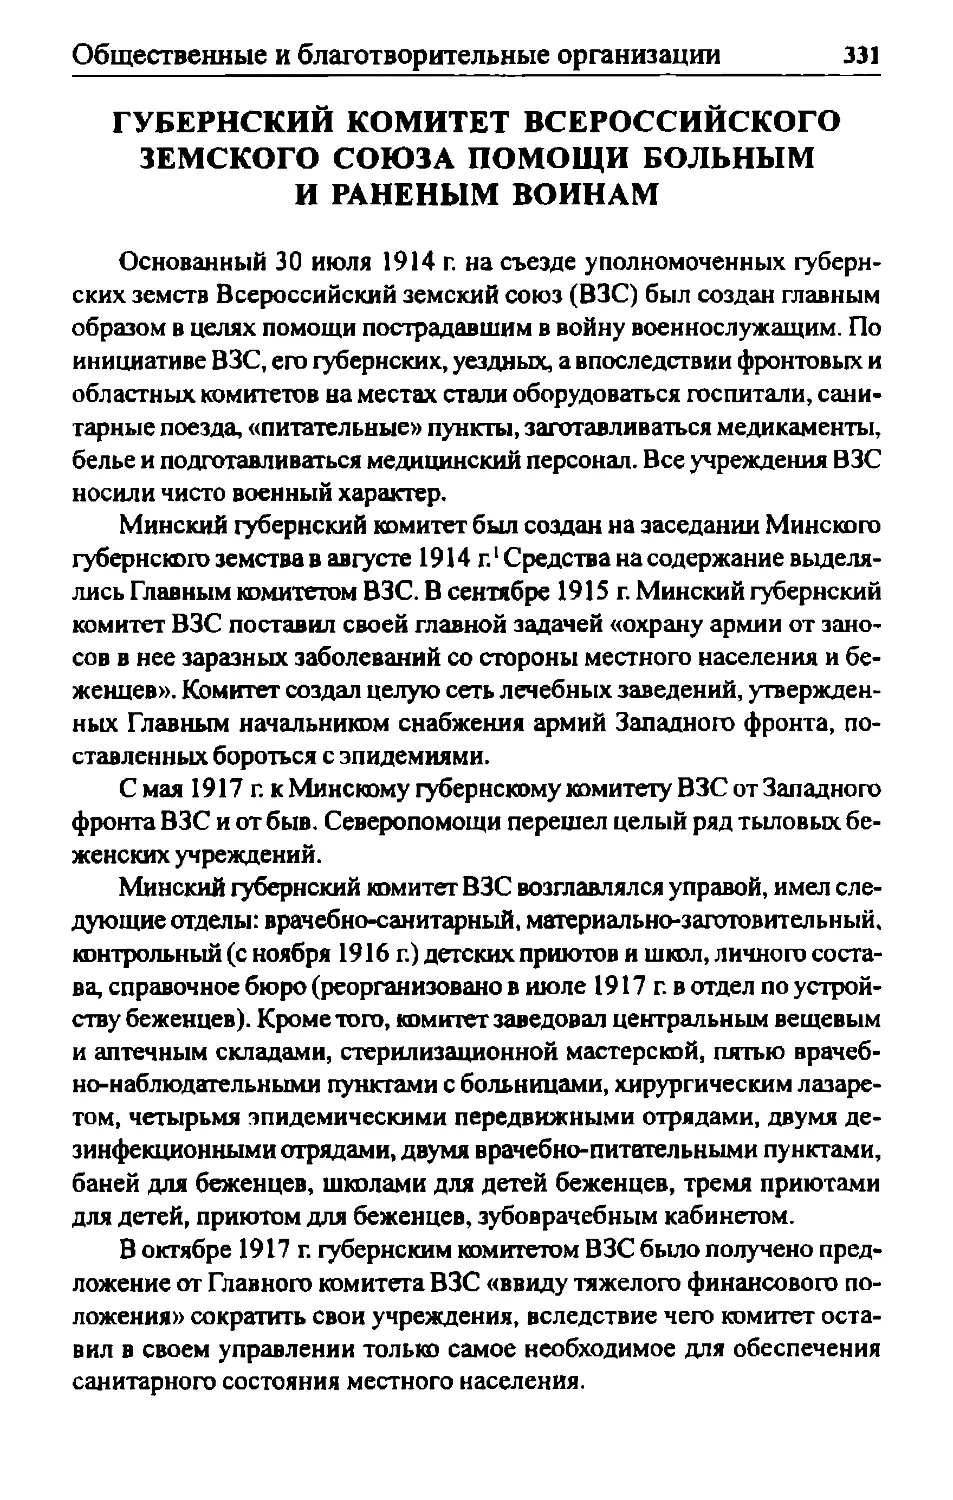 Губернский комитет Всероссийского земского союза помощи больным и раненым воинам